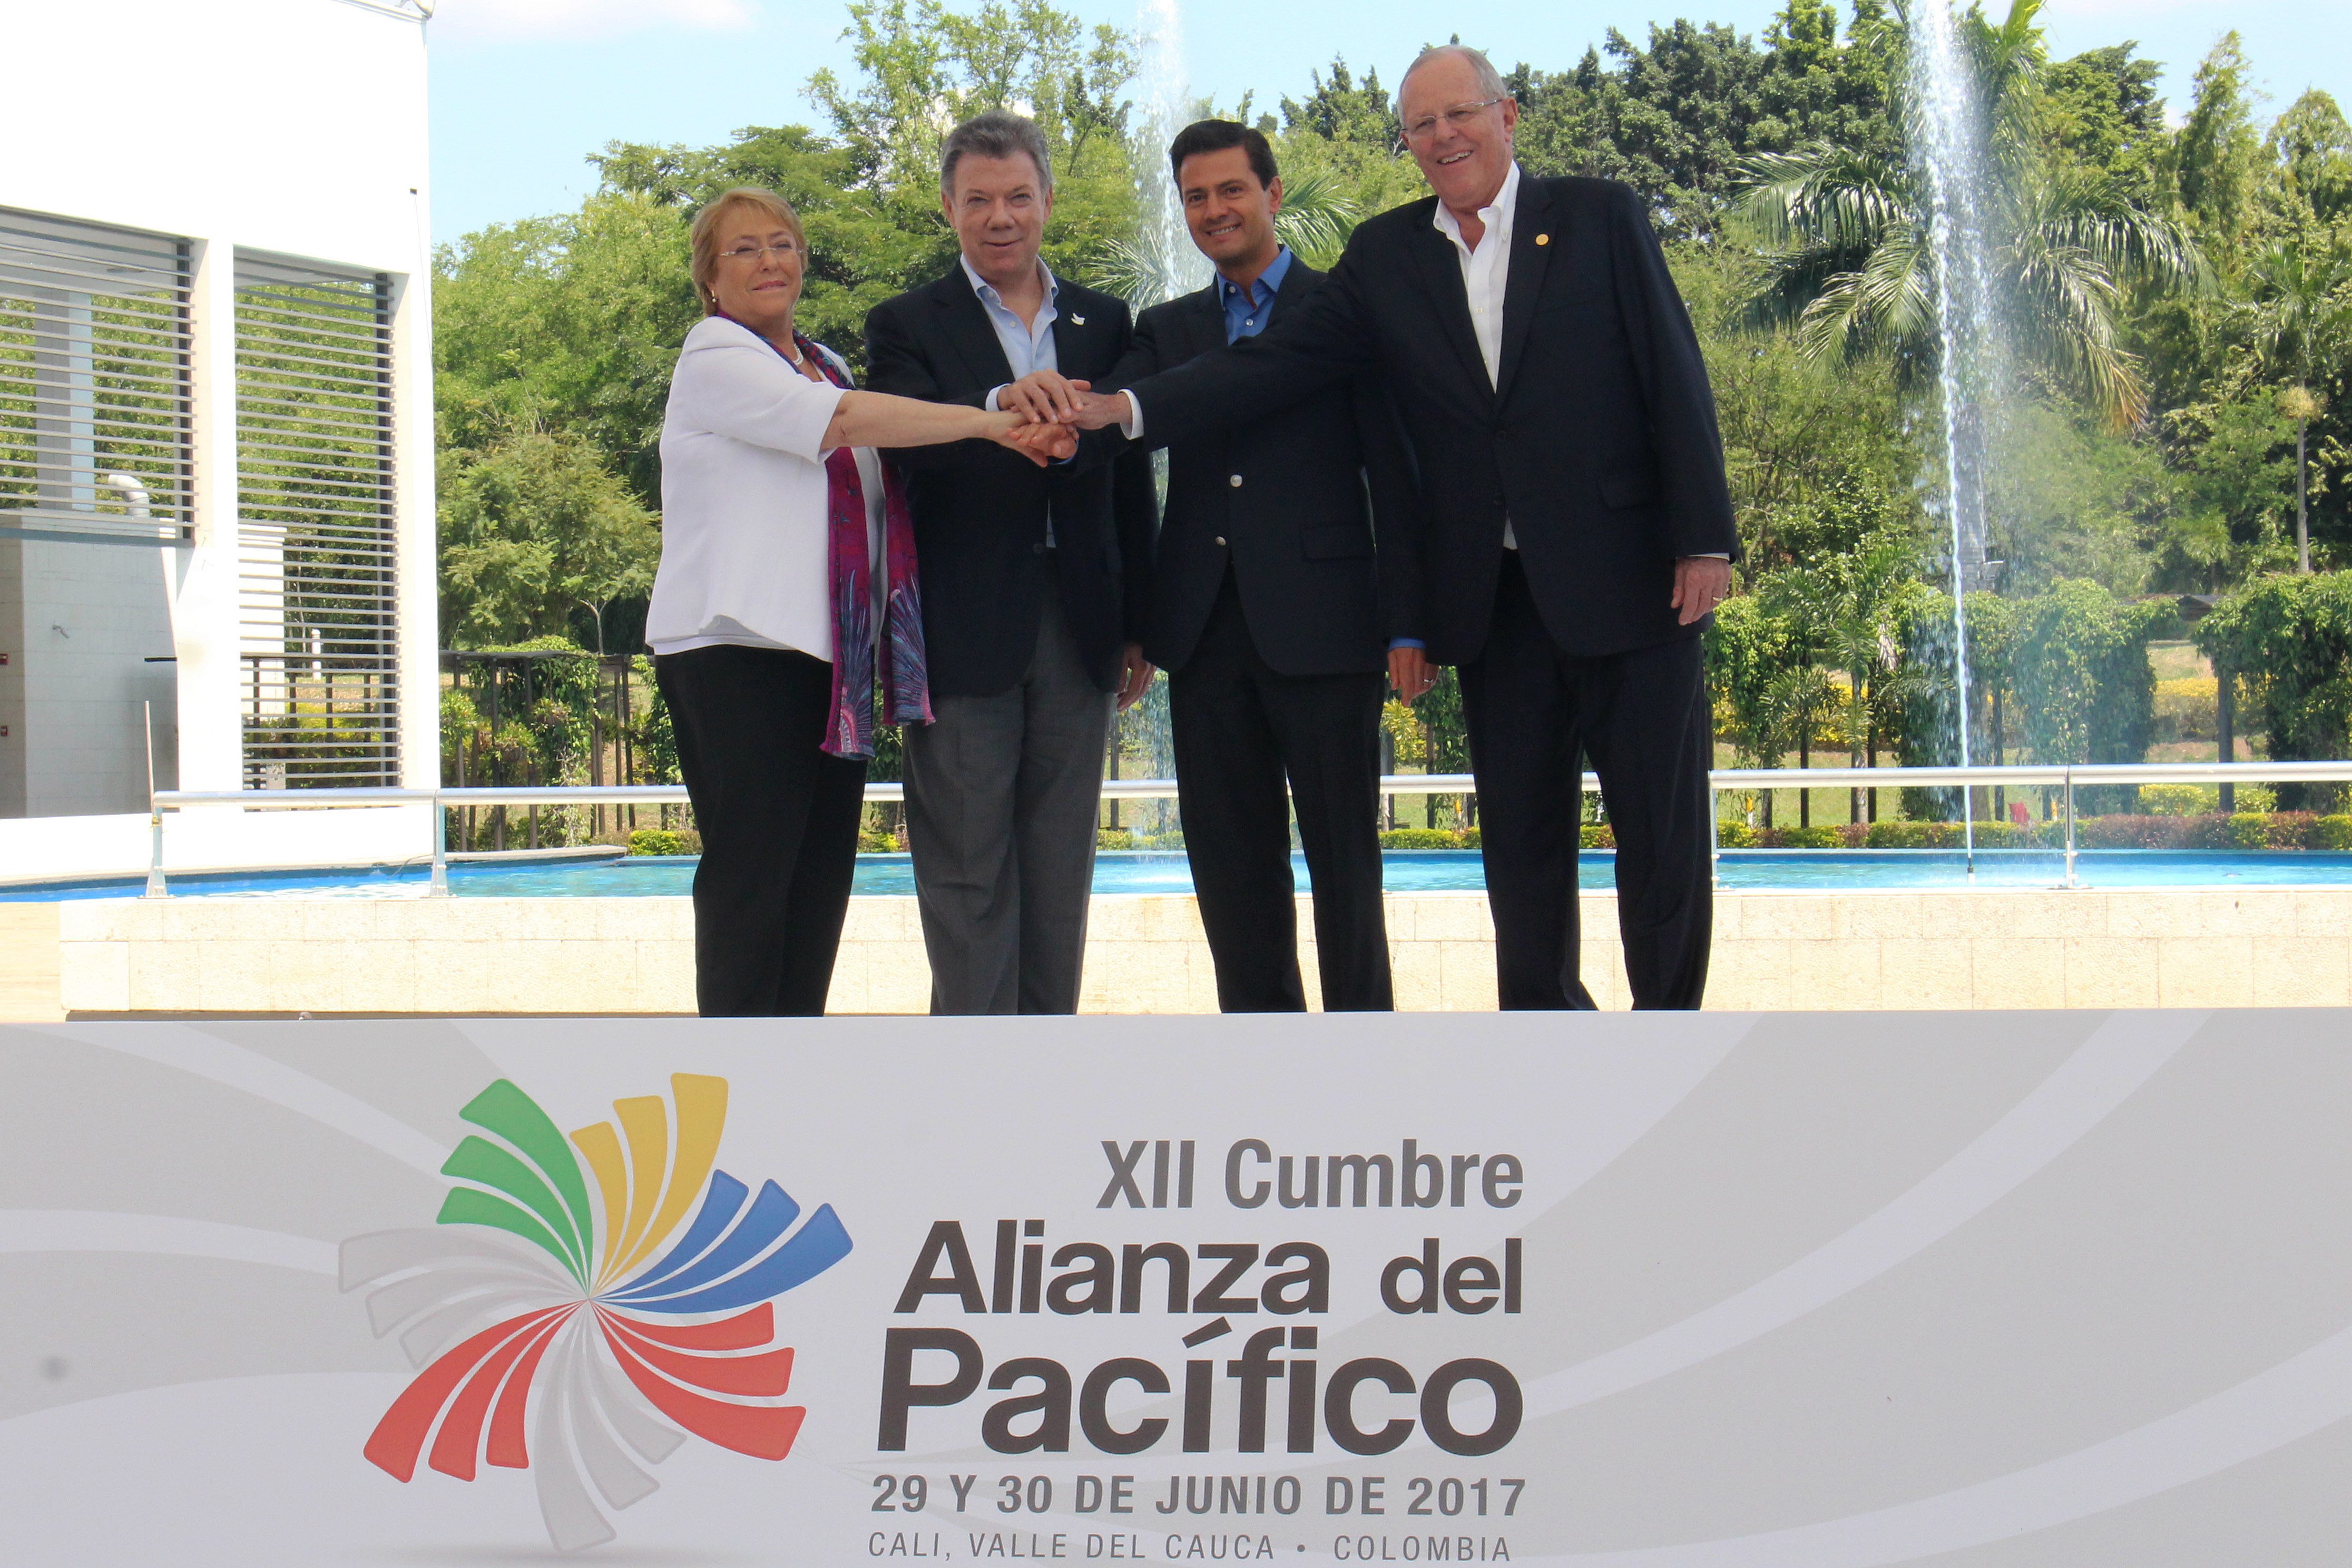 Foto oficial de la XII Cumbre de la Alianza del Pacífico en Cali, Valle del Cauca